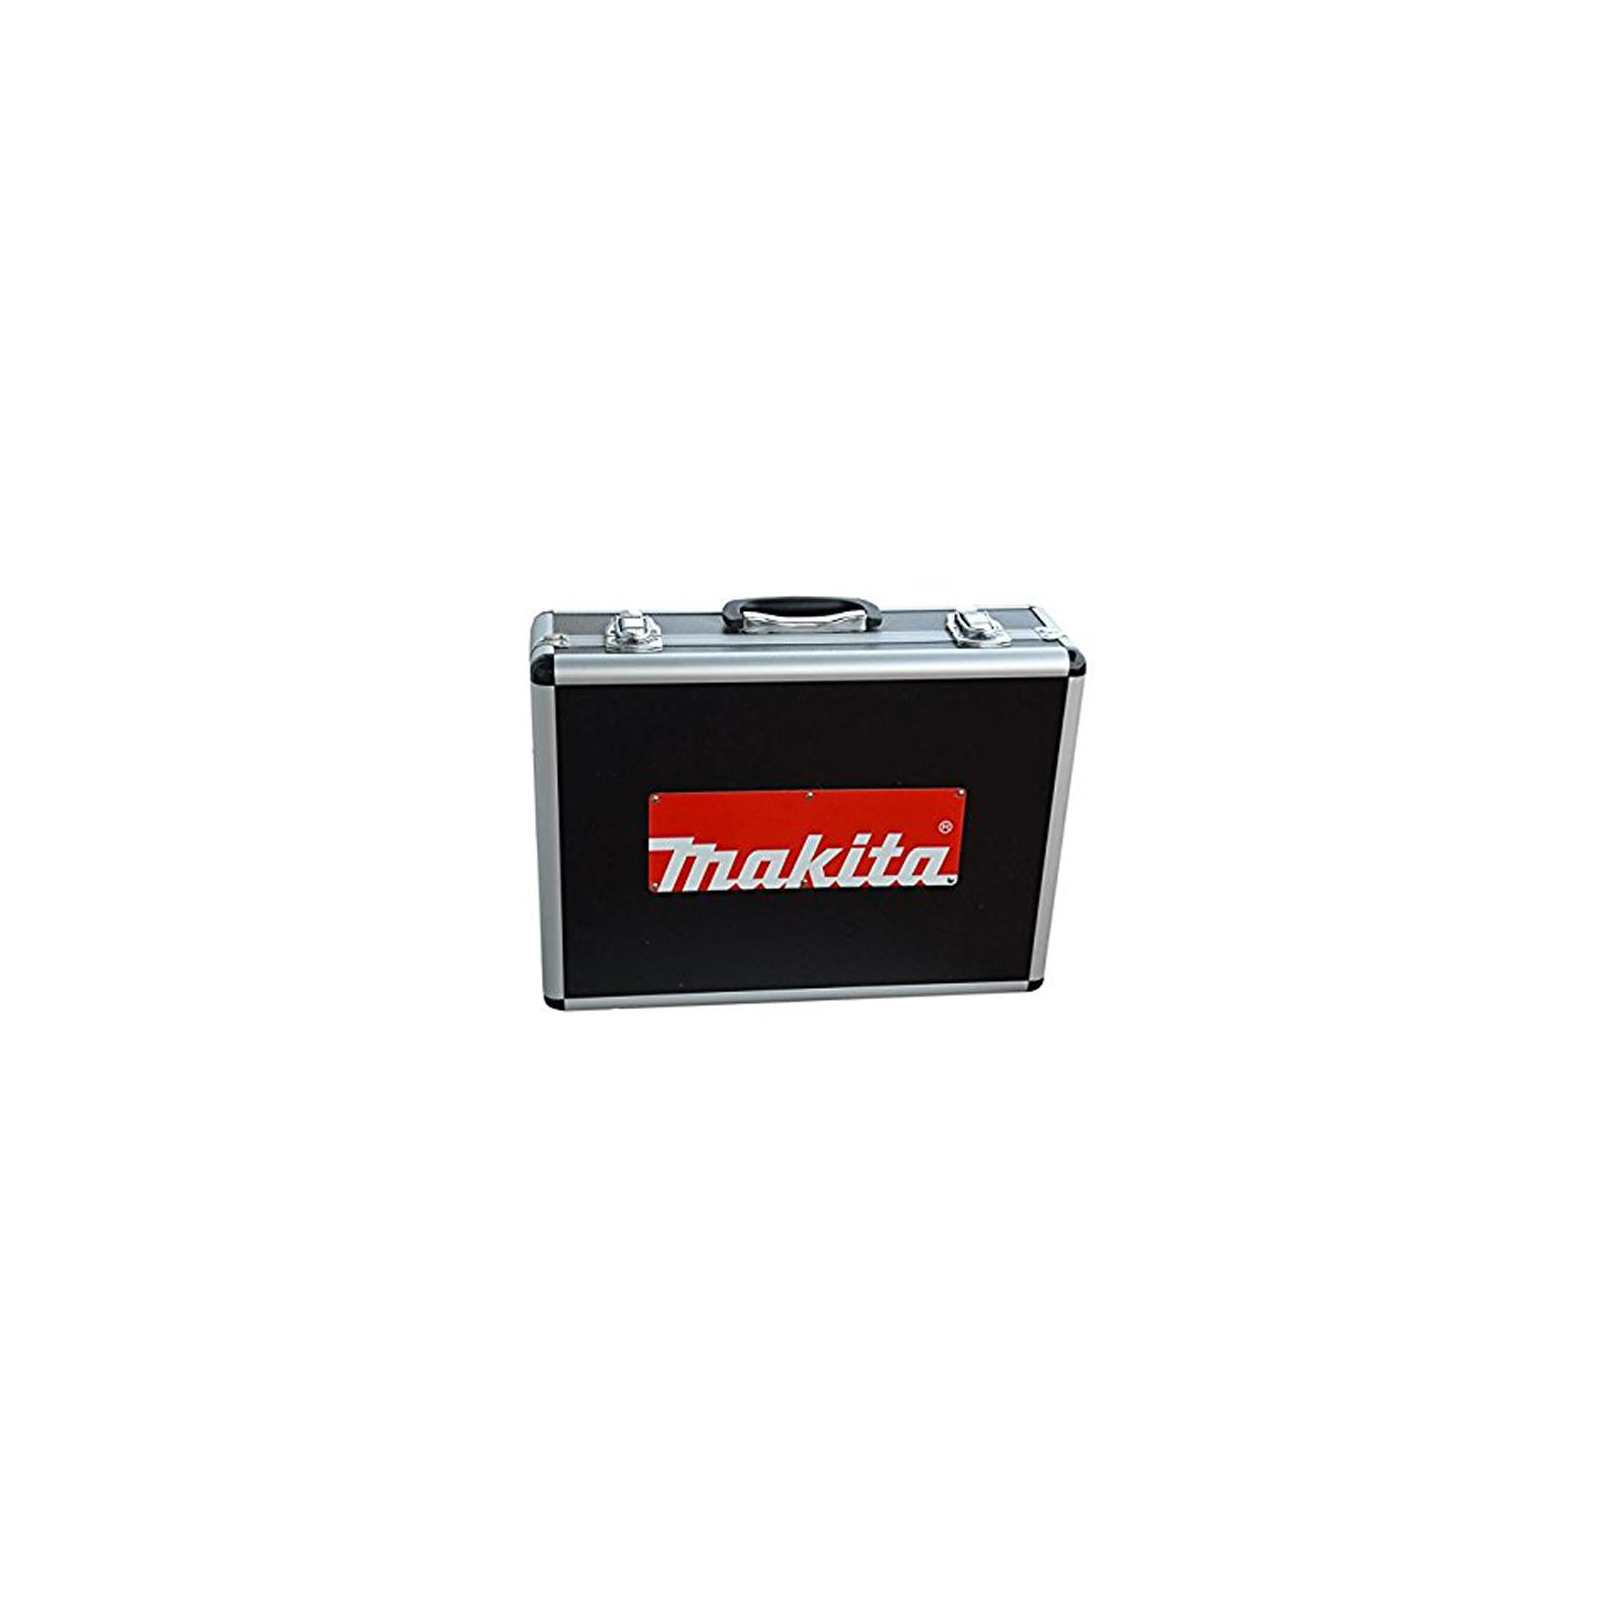 Ящик для инструментов Makita алюминиевый кейс для 9555NB / GA4530 / GA5030 (823294-8)